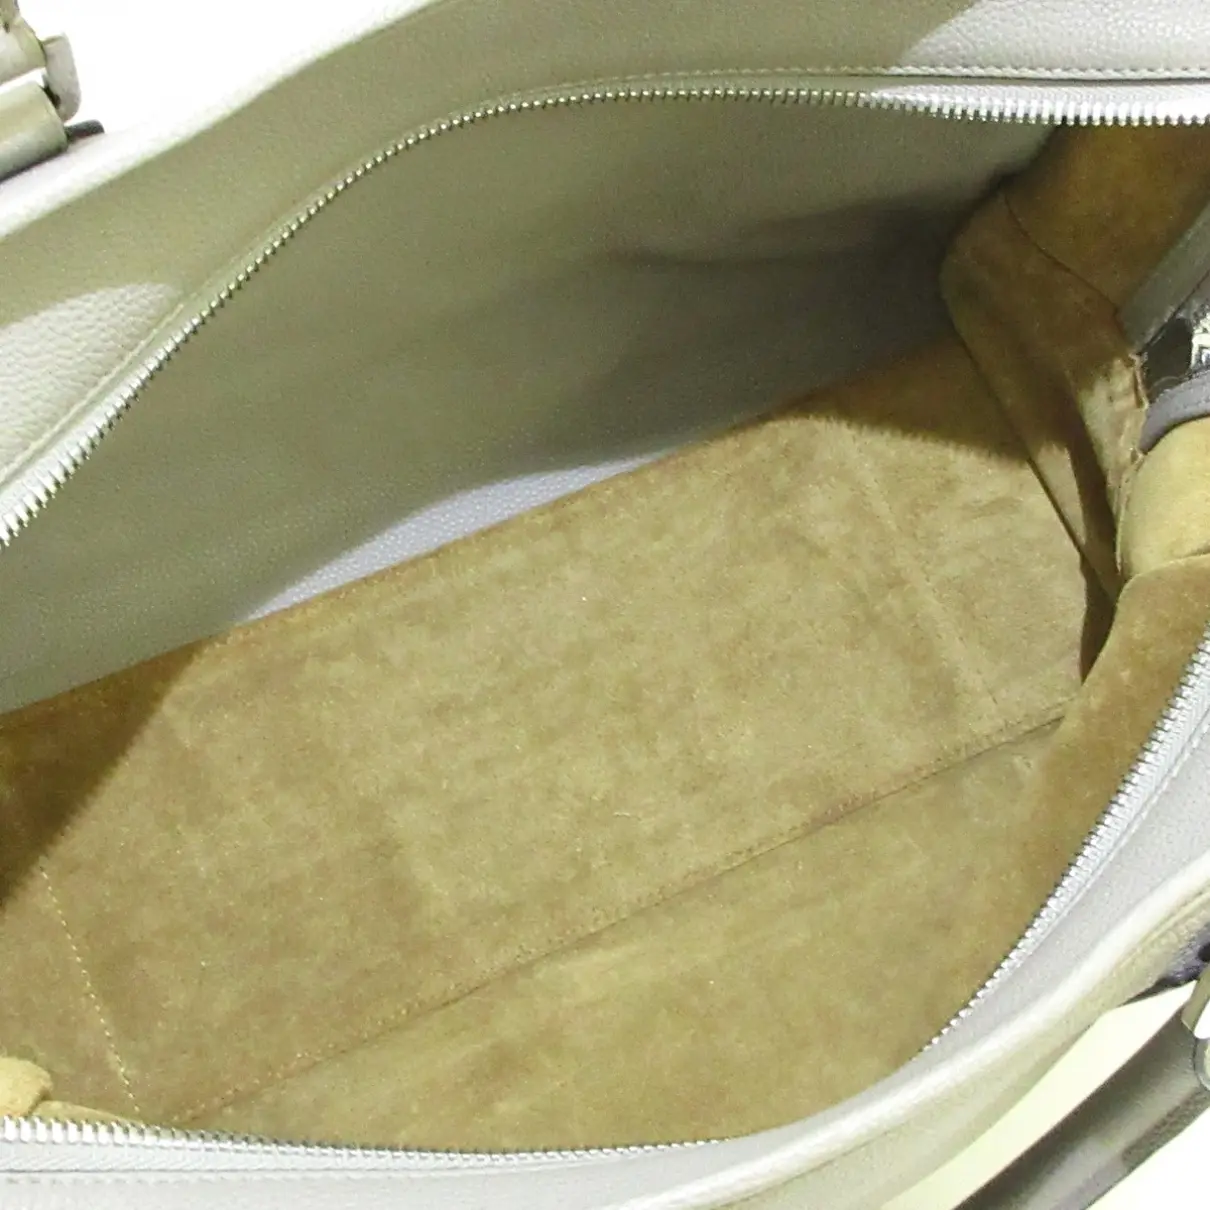 Amazona leather handbag Loewe